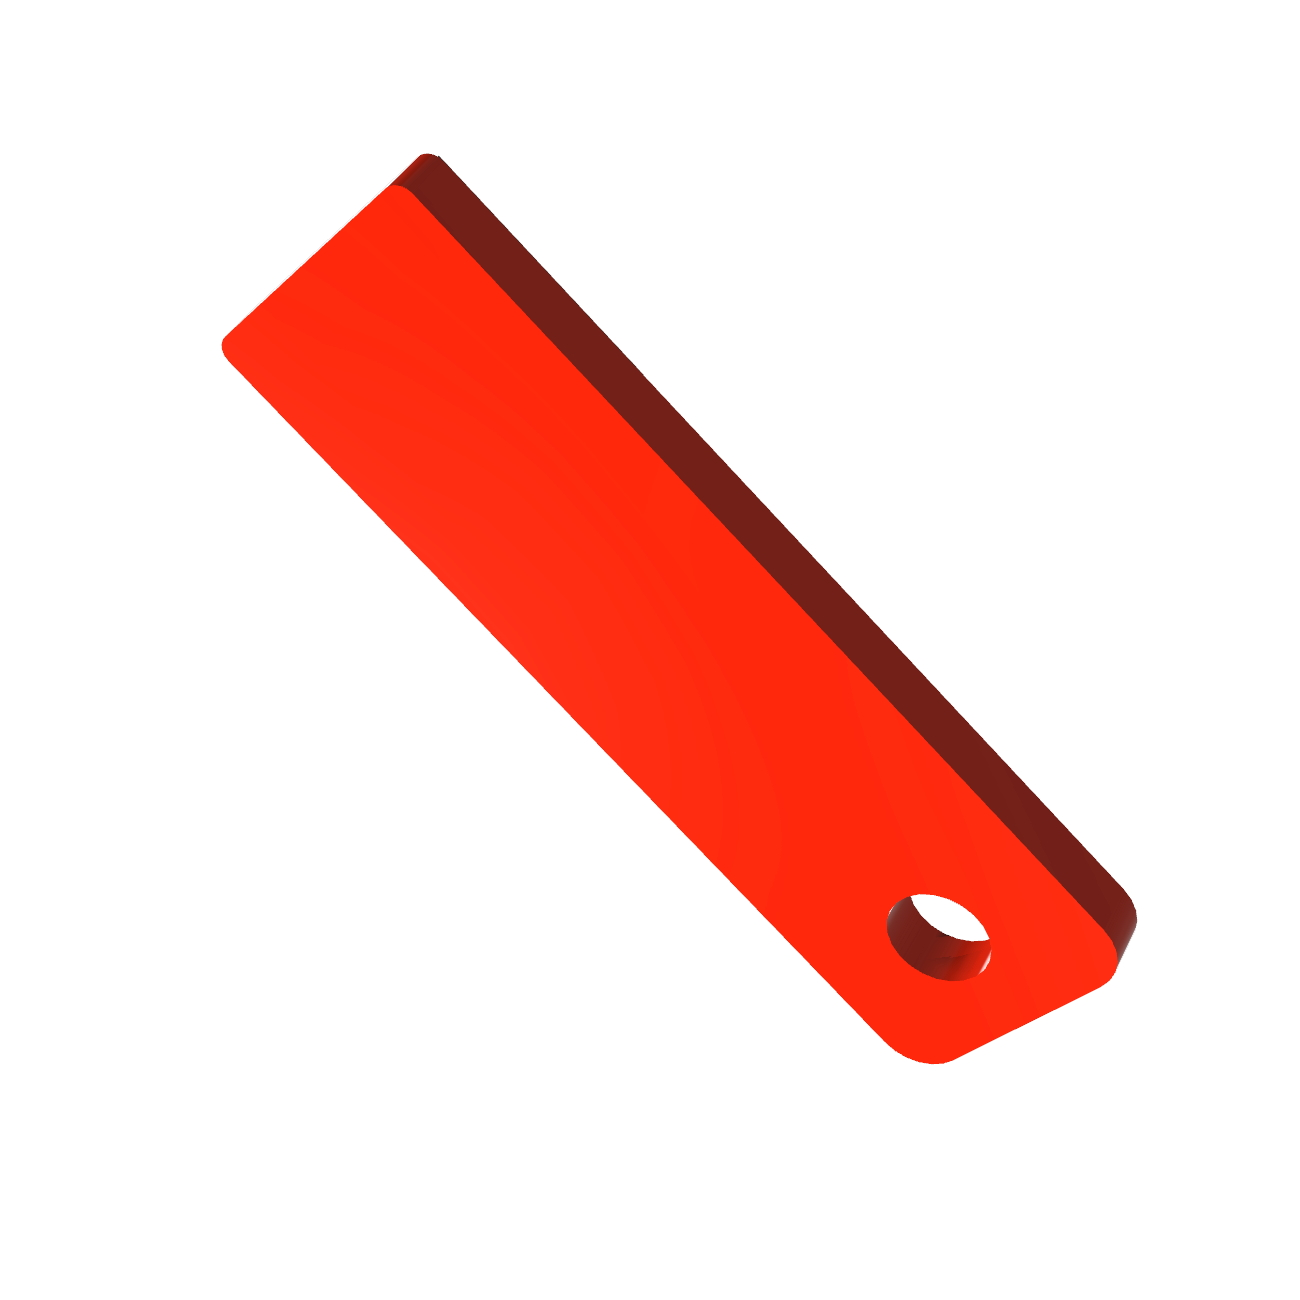 USB GERMANY Slim GB) ® USB-Stick Mini (Rot, 16